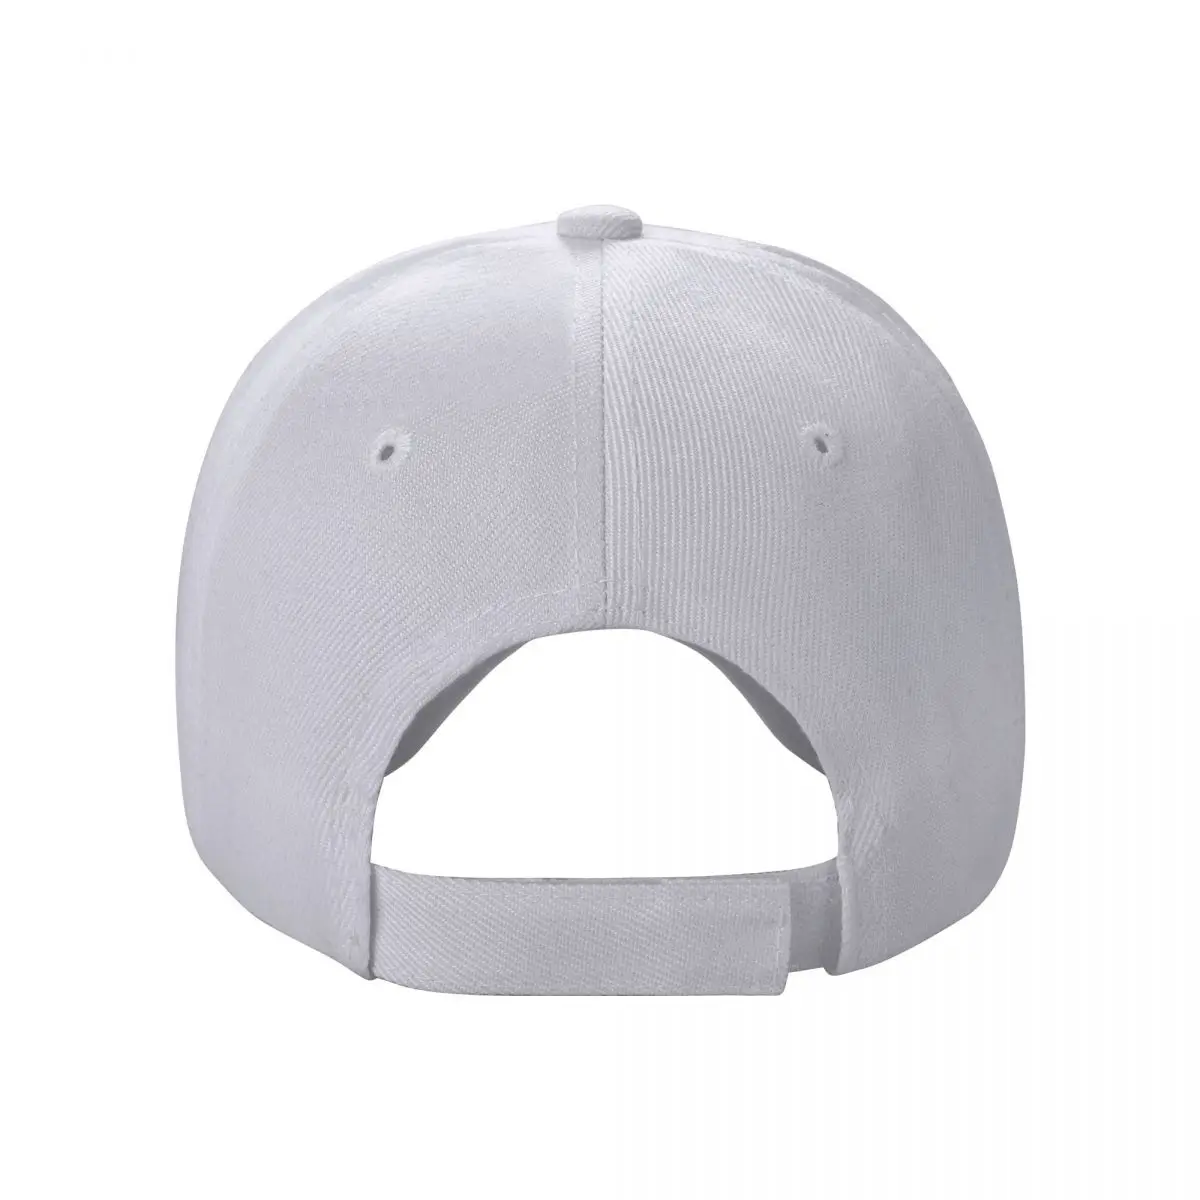 Бейсбольная кепка OBITUARY Брендовые мужские кепки Одежда для гольфа Регби шляпы на заказ Шляпа для мужчин Женская